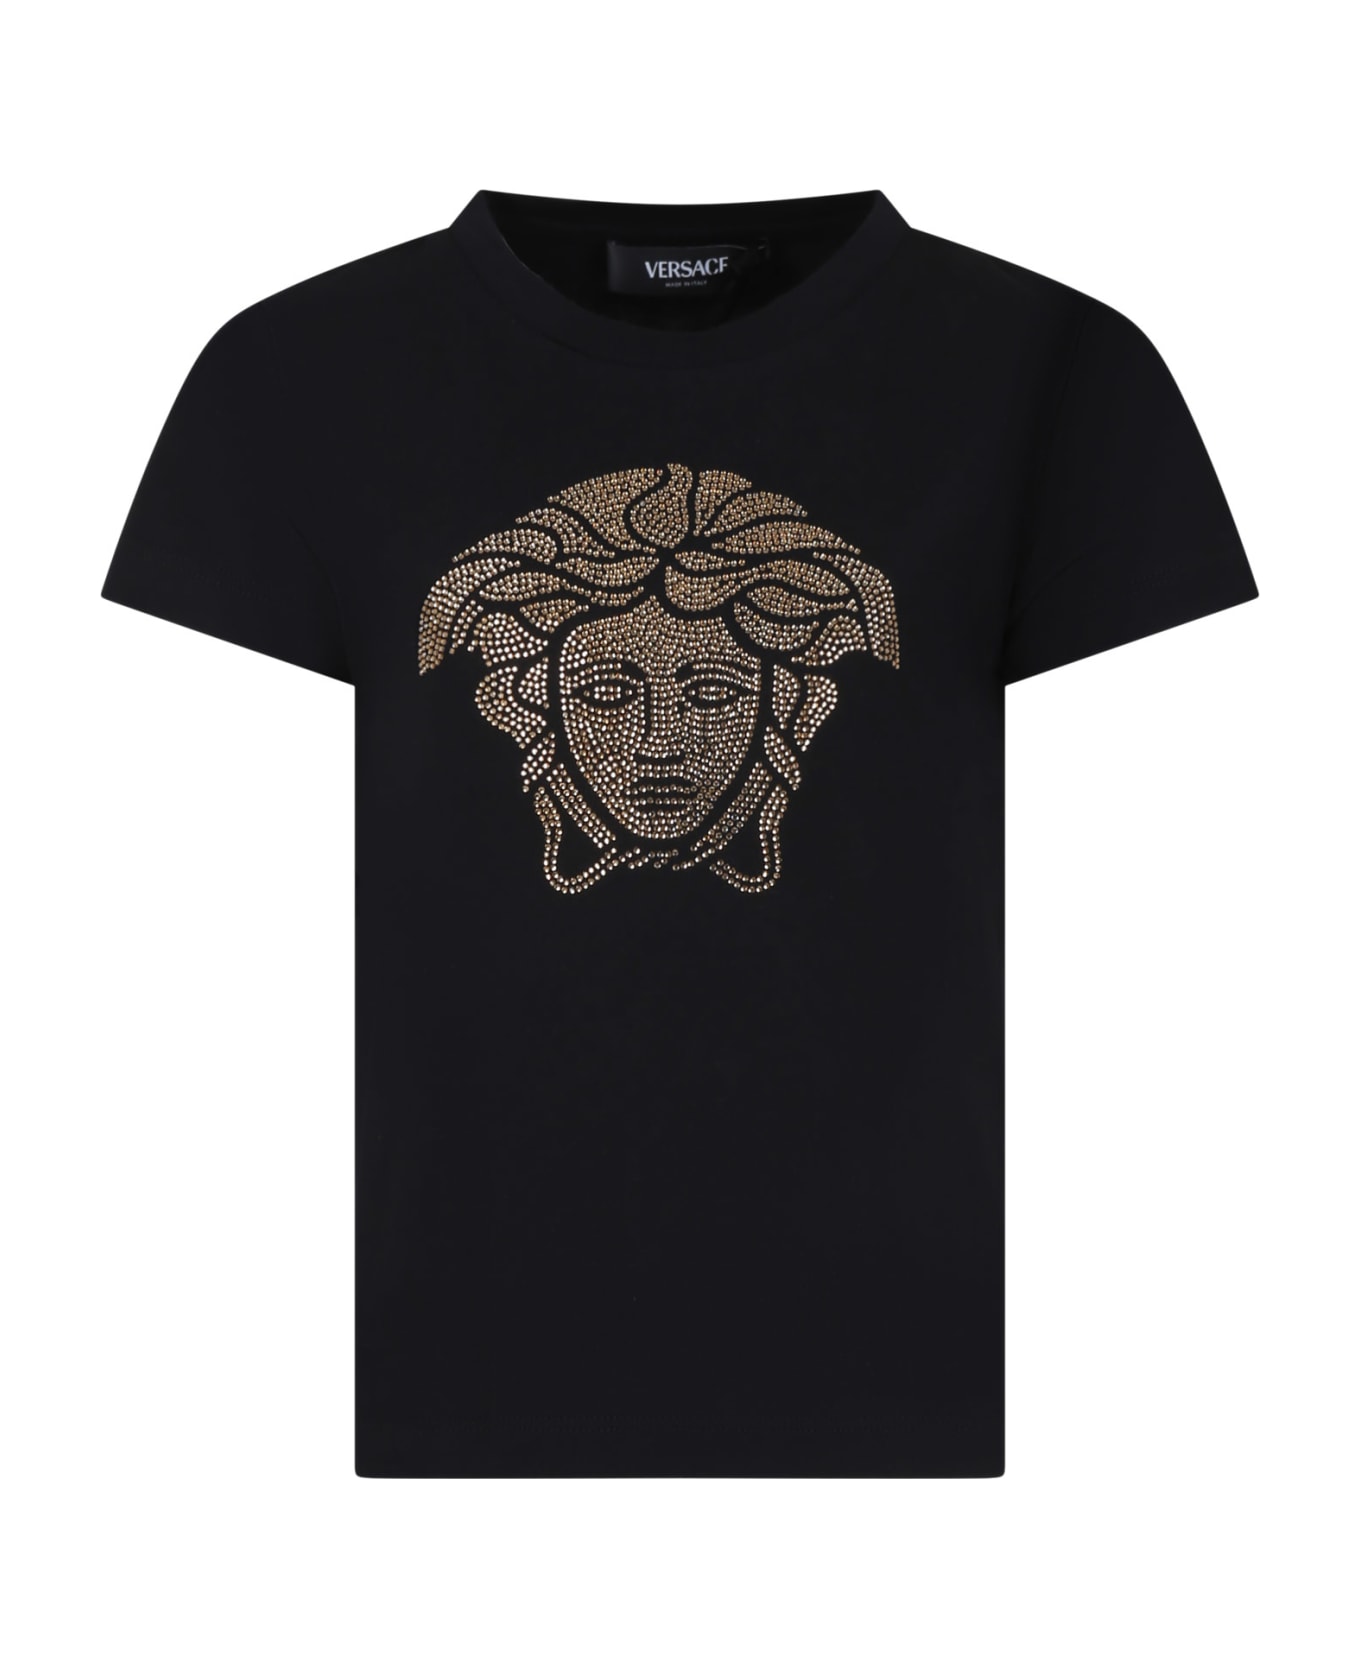 Versace Black T-shirt For Girl With Medusa - Black